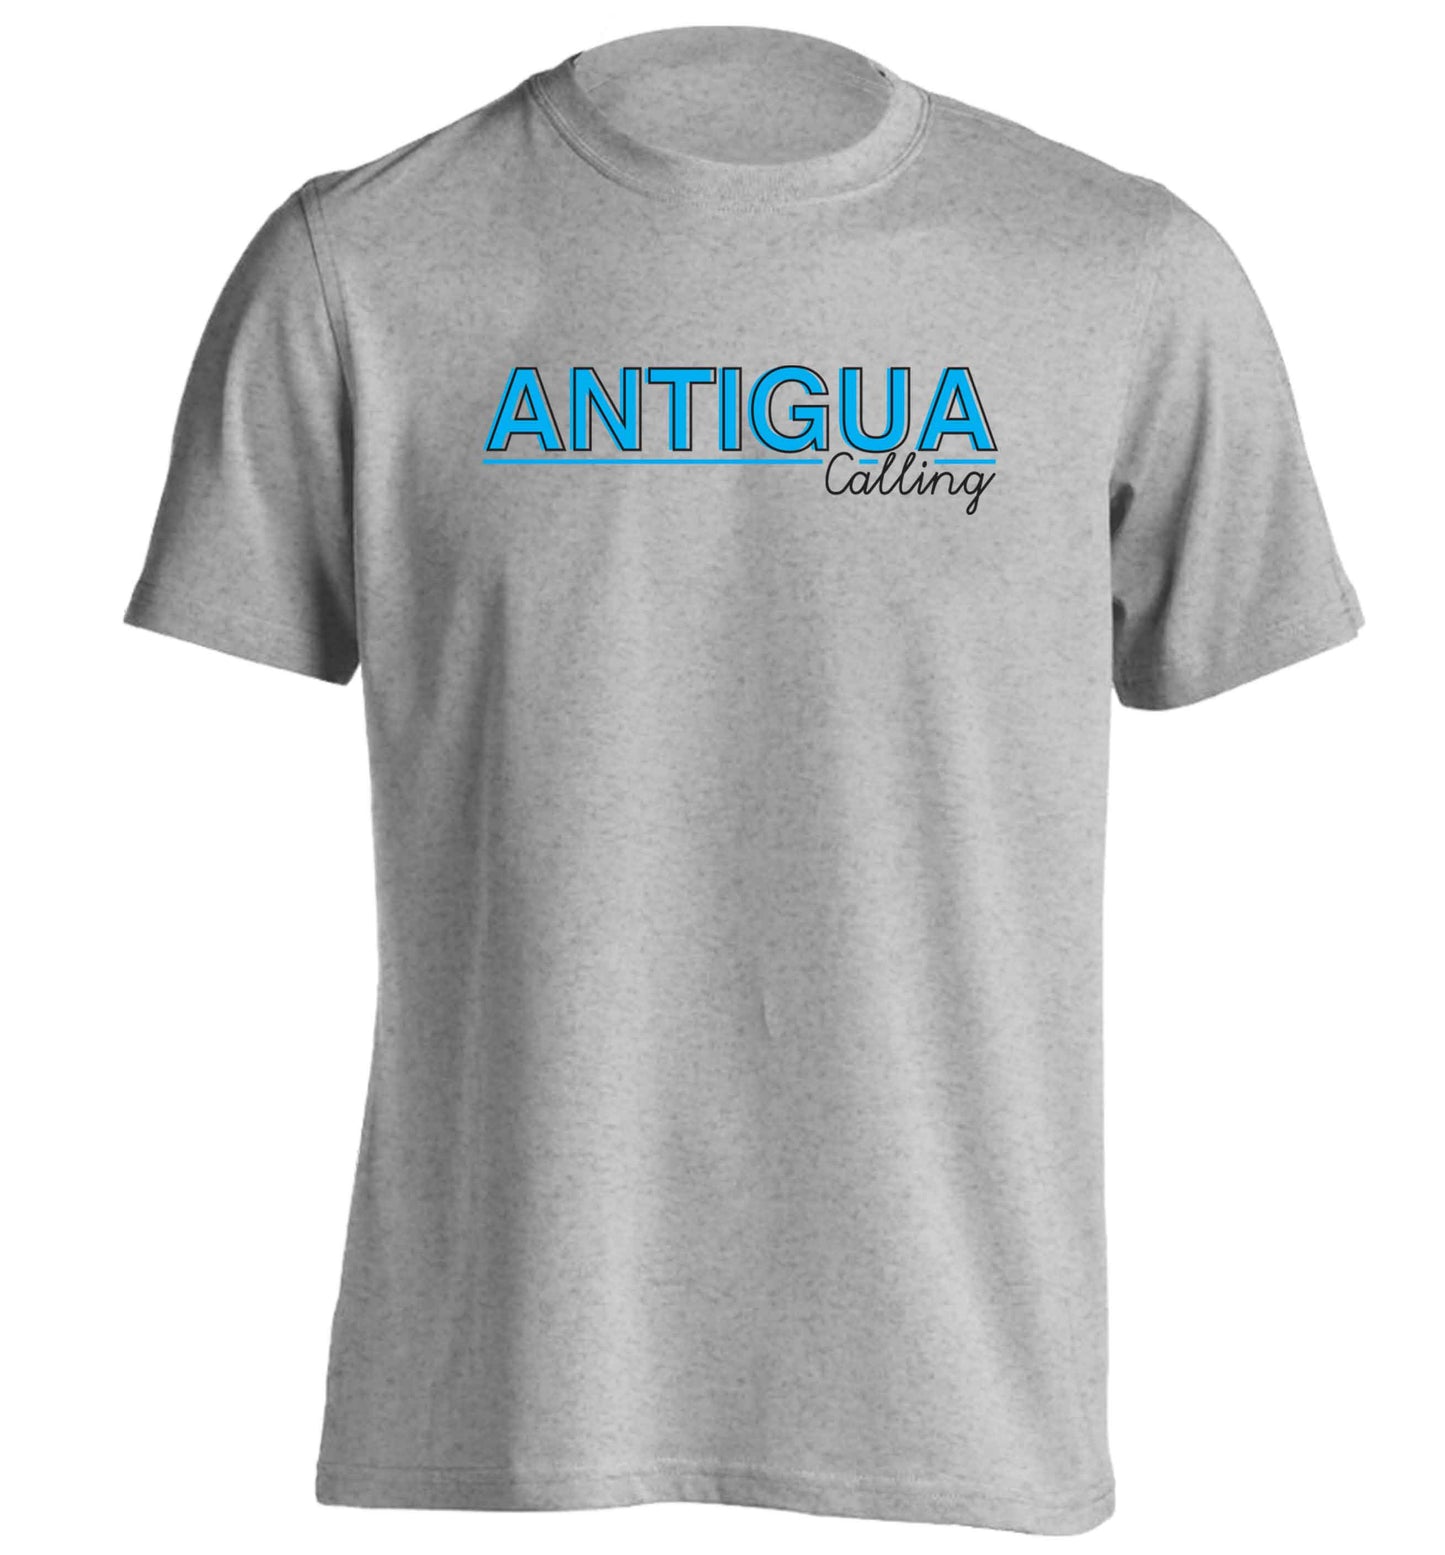 Antigua calling adults unisex grey Tshirt 2XL